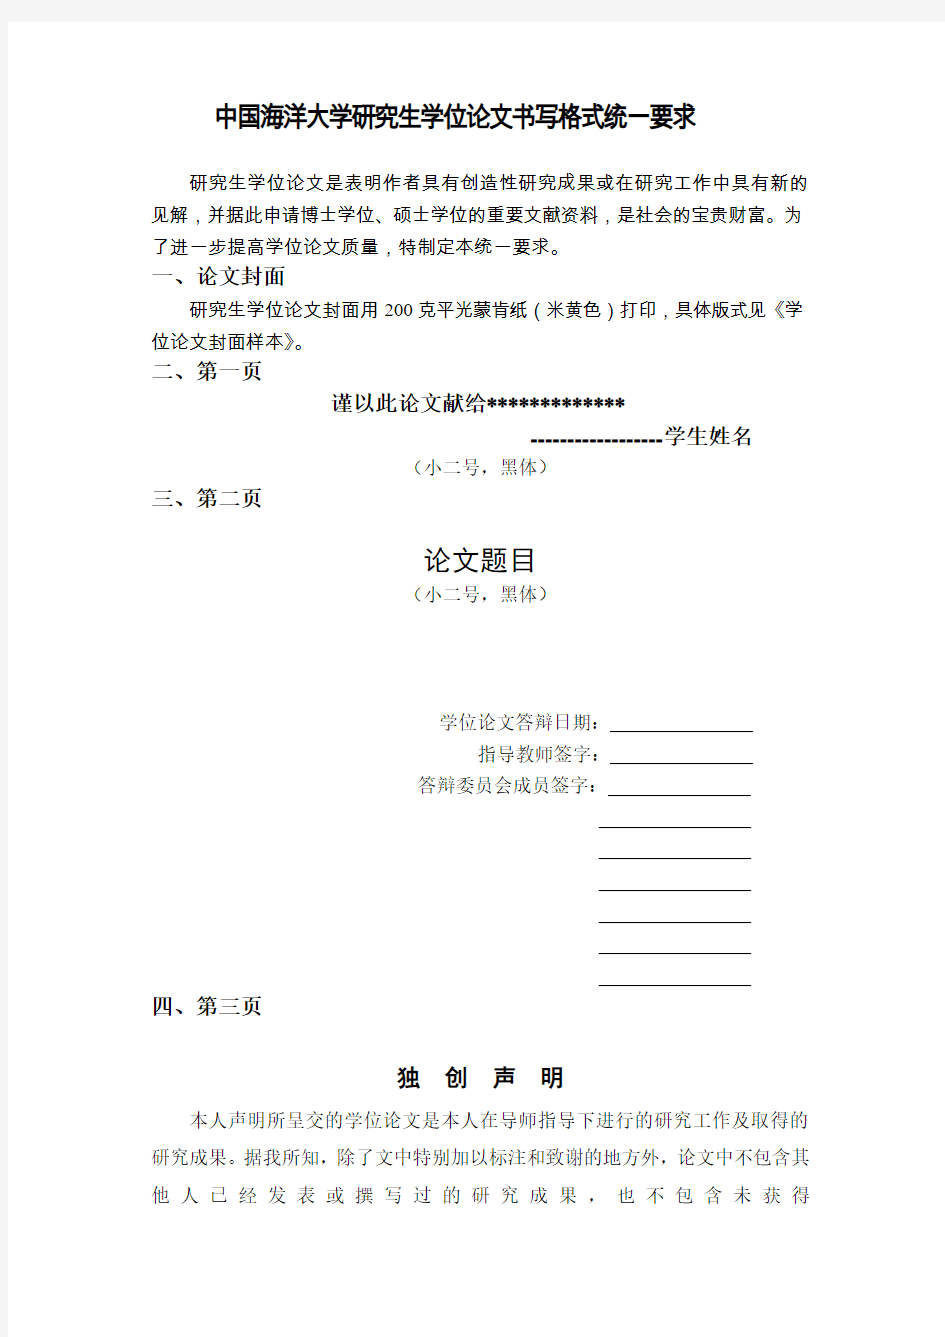 中国海洋大学研究生学位论文书写格式统一要求